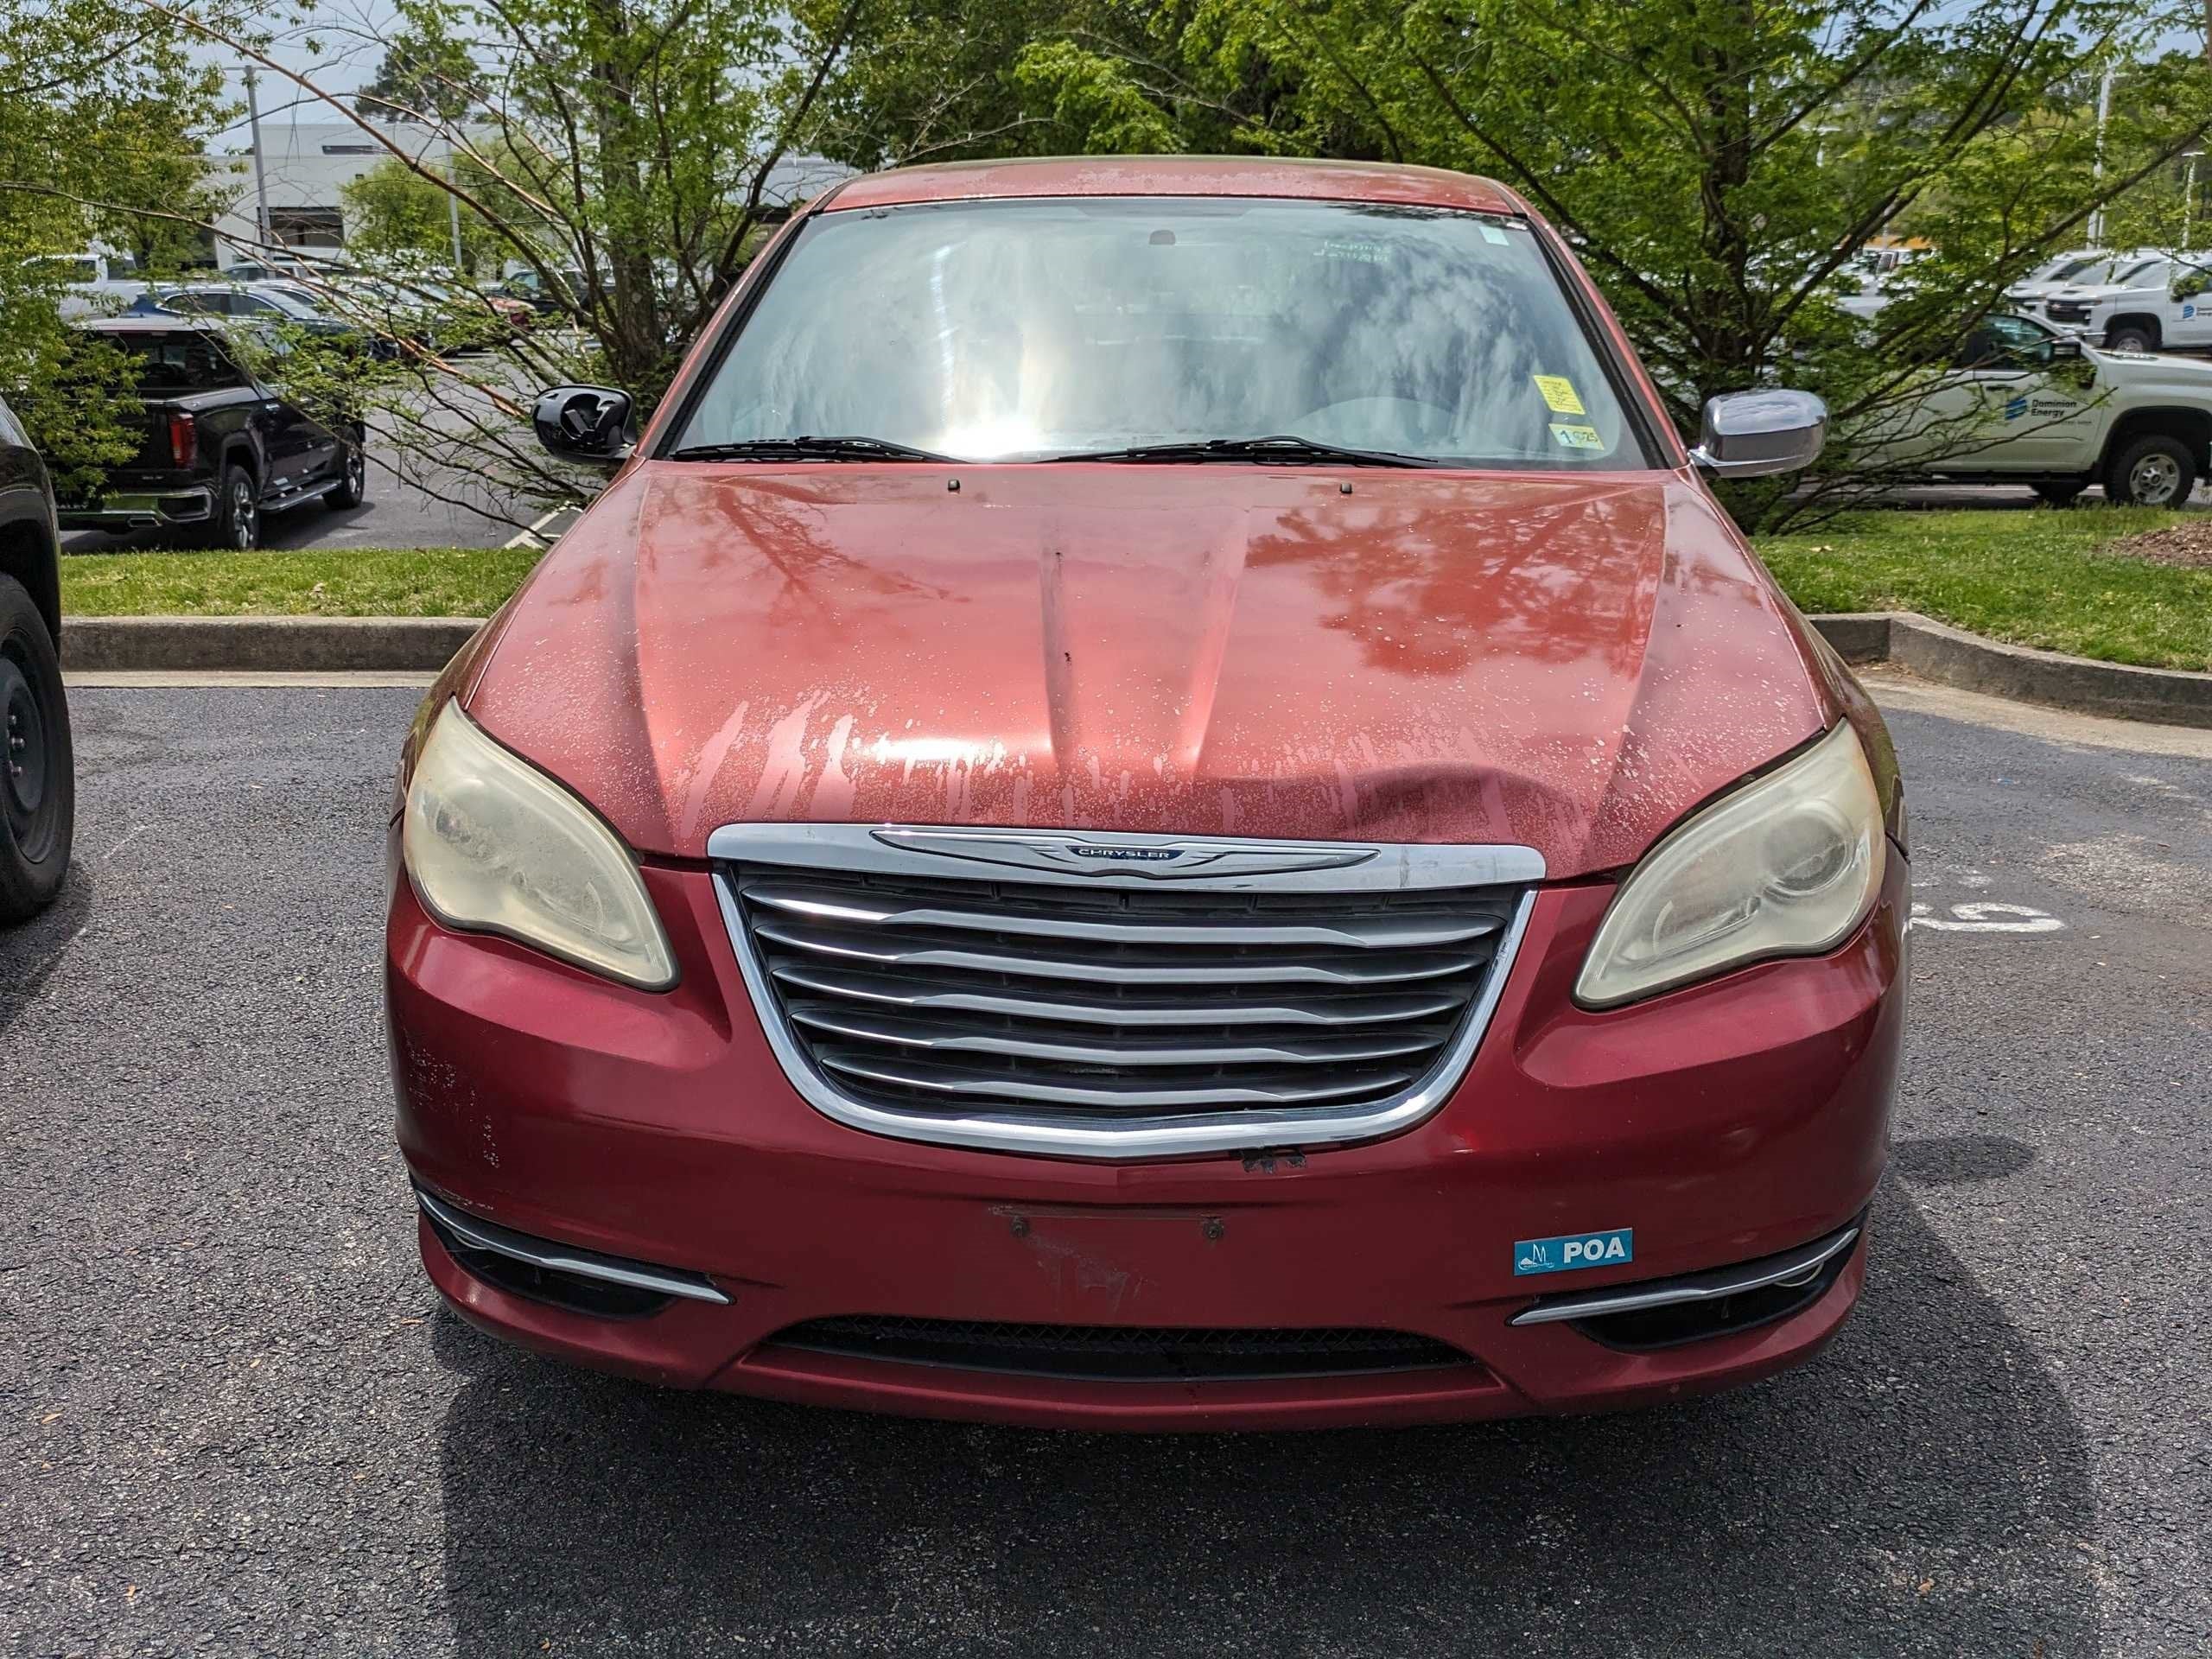 2011 Chrysler 200 Limited